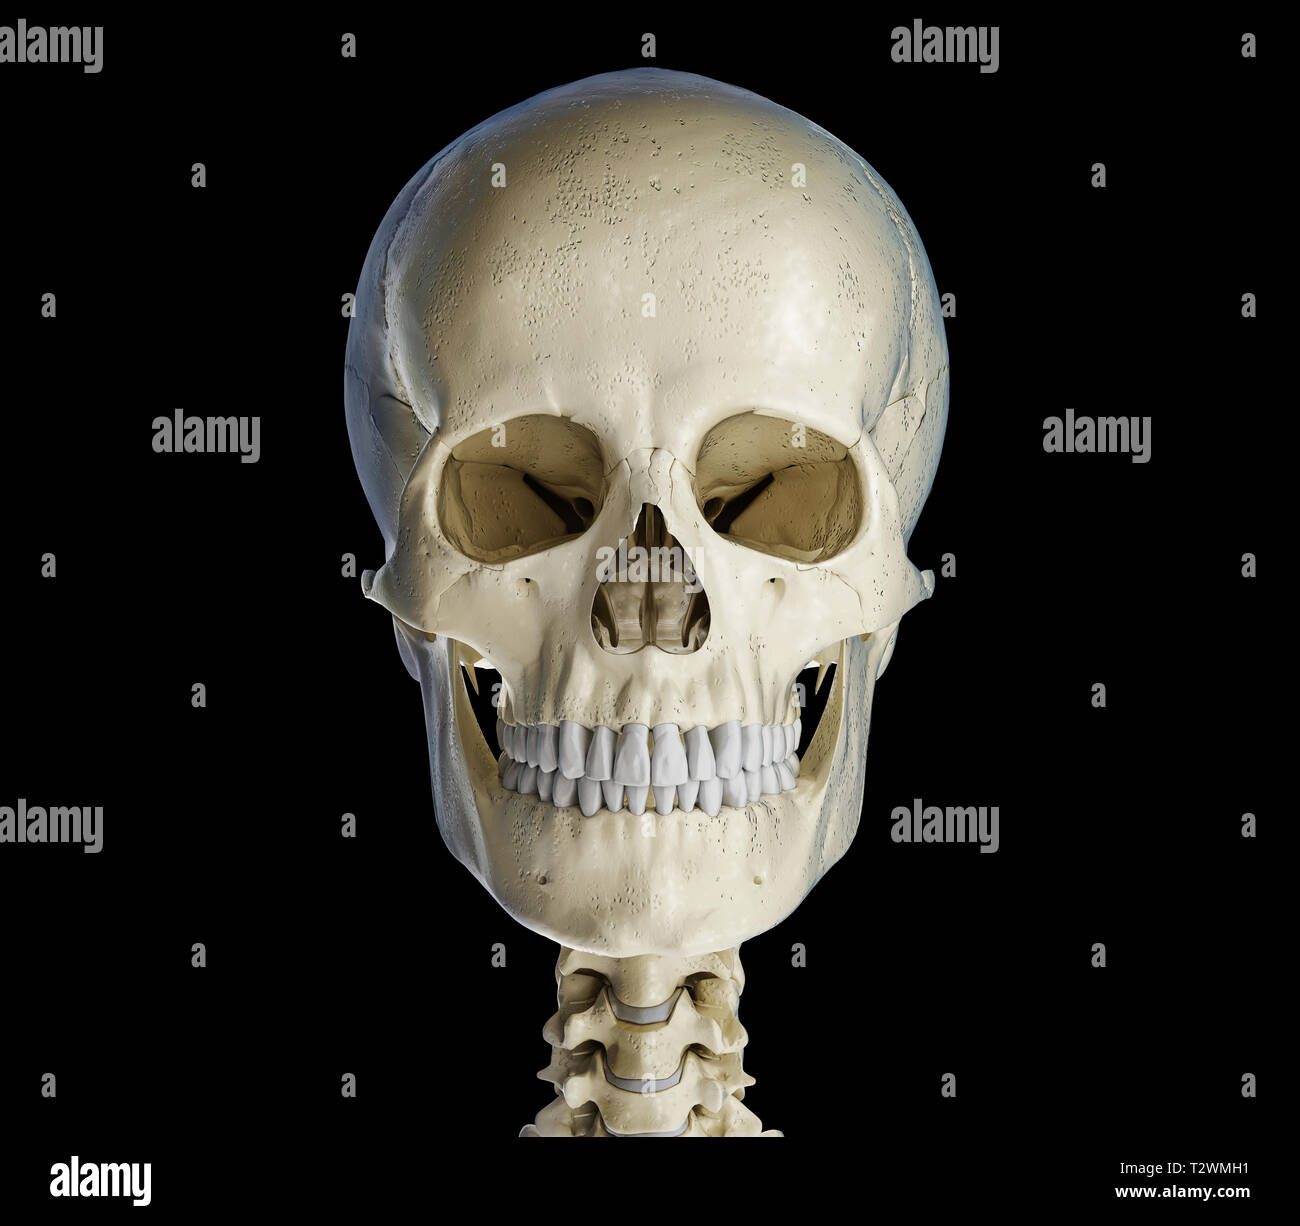 Crâne humain du point de vue de l'avant. Sur fond noir. Banque D'Images